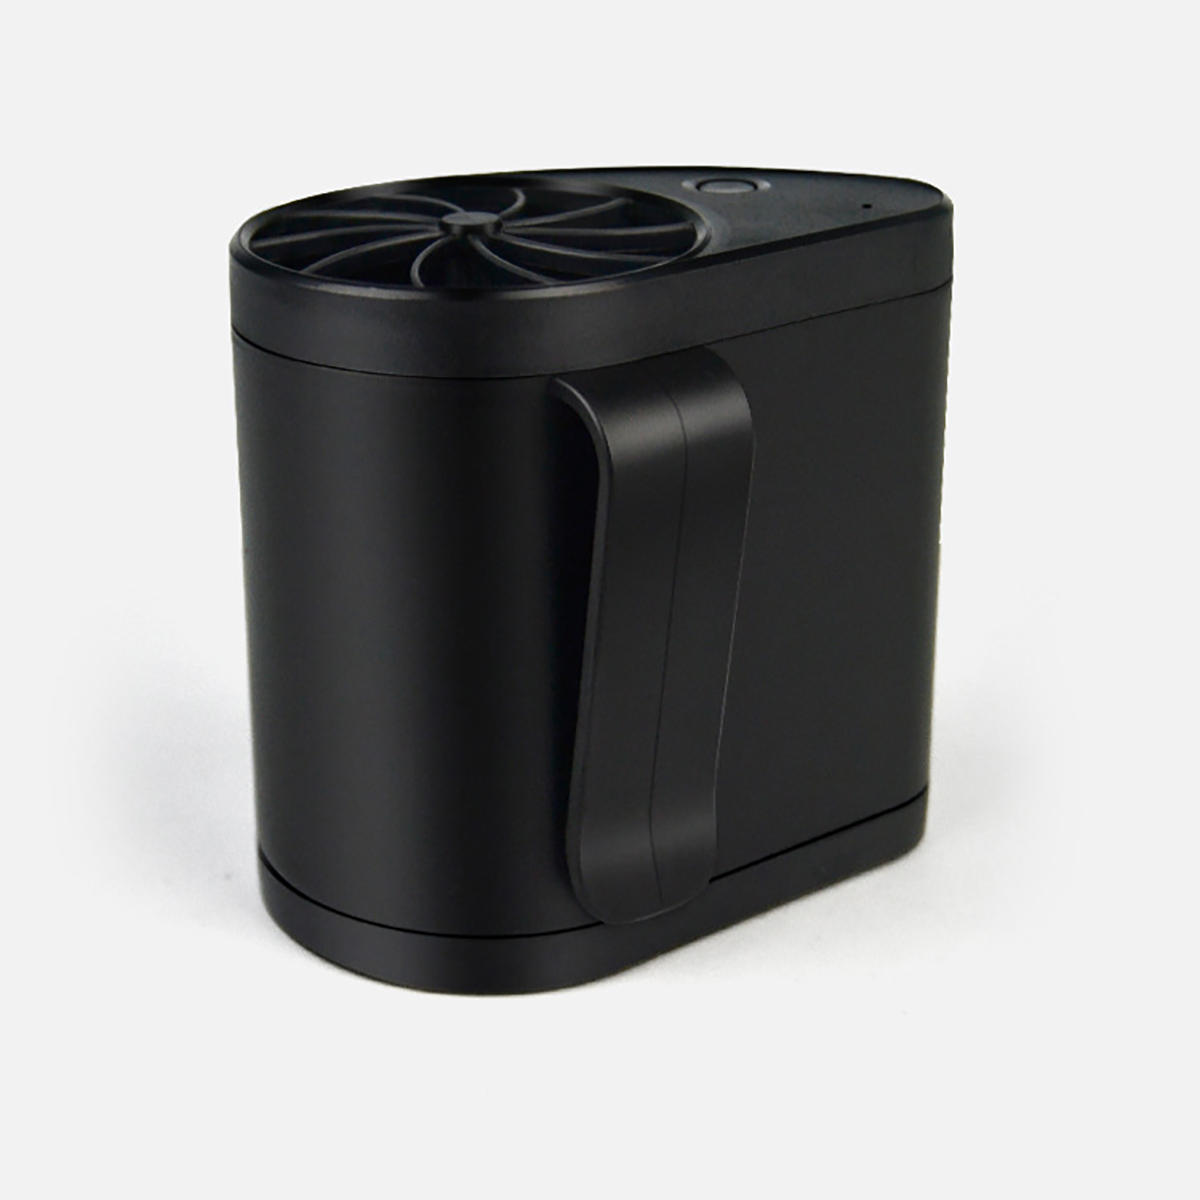 Hands-free Taille Opknoping Ventilator USB Oplaadbare Buiten Airconditioner Koeler Ventilator